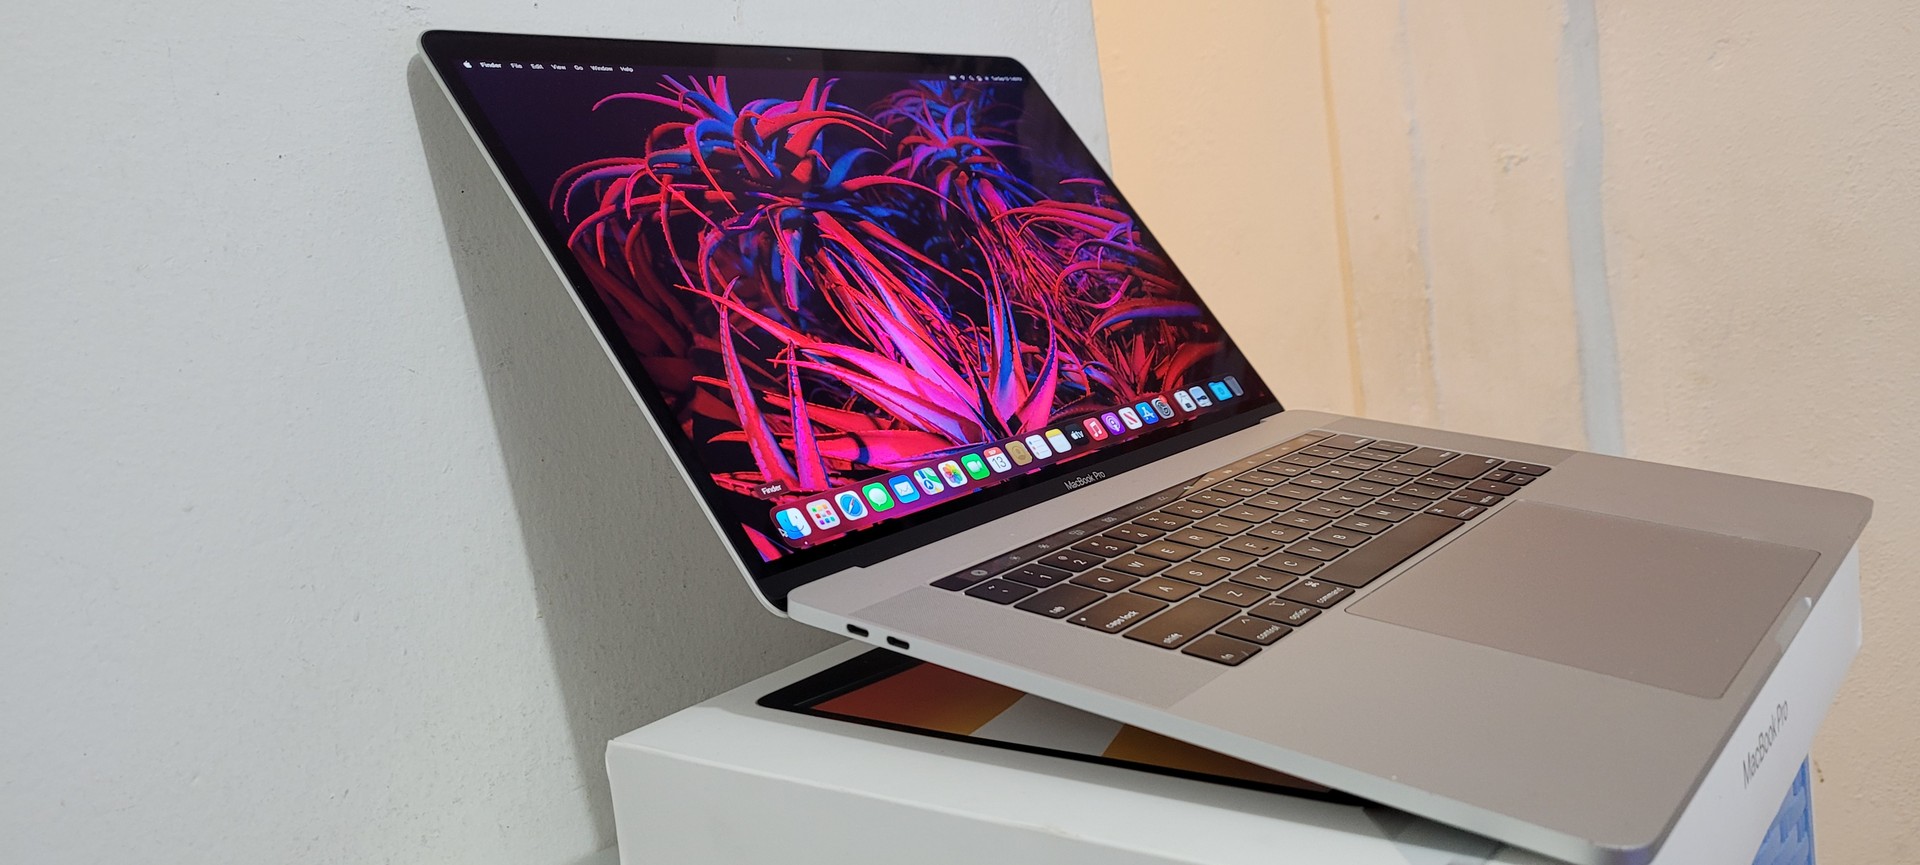 computadoras y laptops - Macbook Pro Retina 15.5 Pulg Core i7 Ram 16gb Disco 256gb SSD año 2018 1